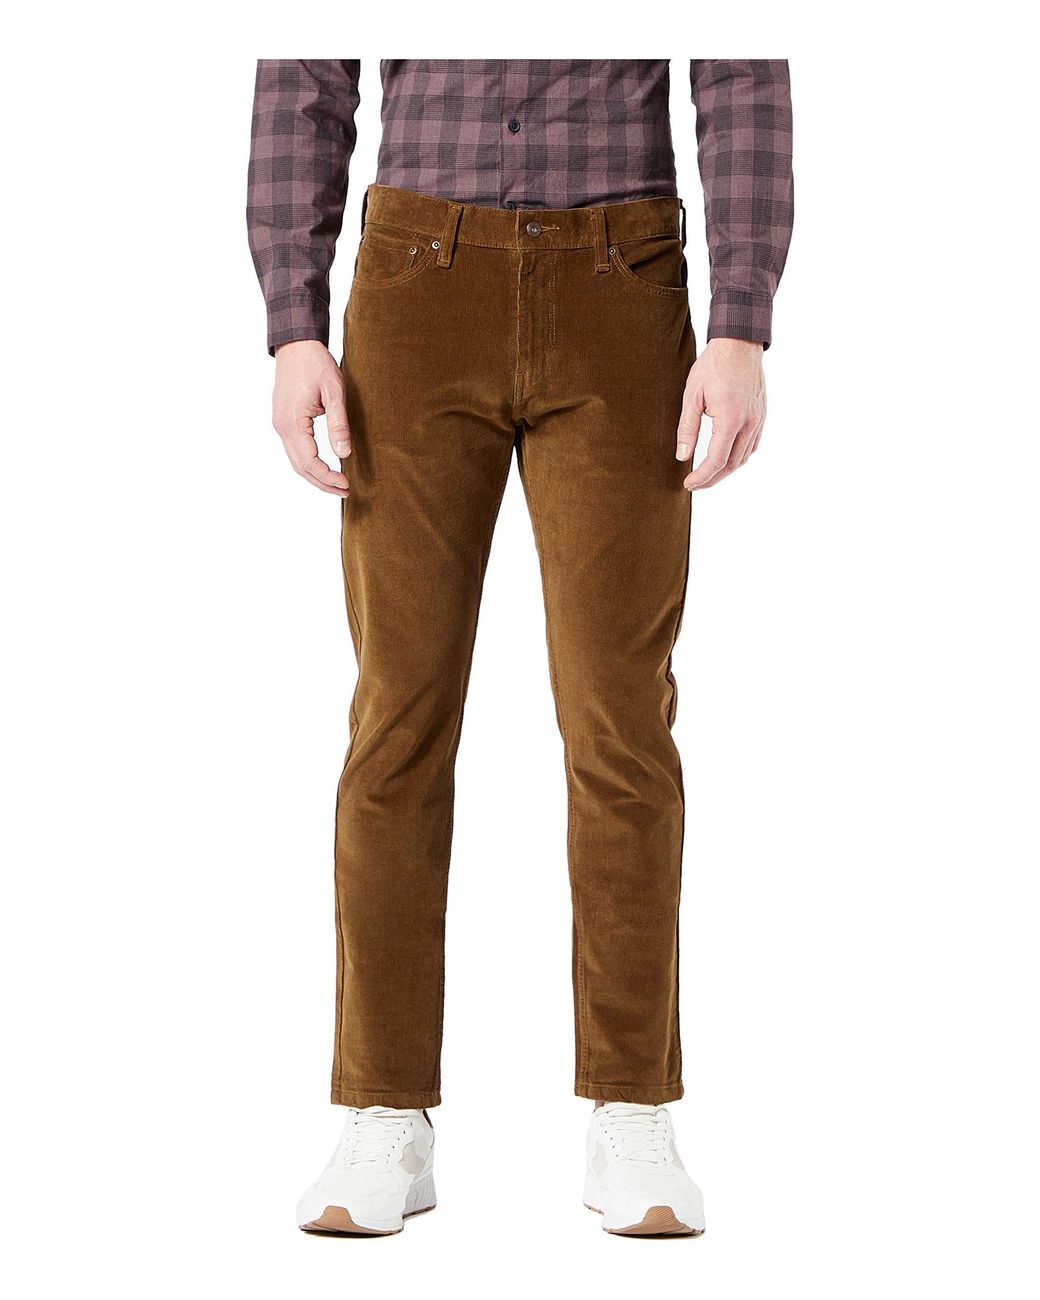 Dockers Denim Slim Fit Ultimate Jean Cut Pants in Brown for Men - Lyst